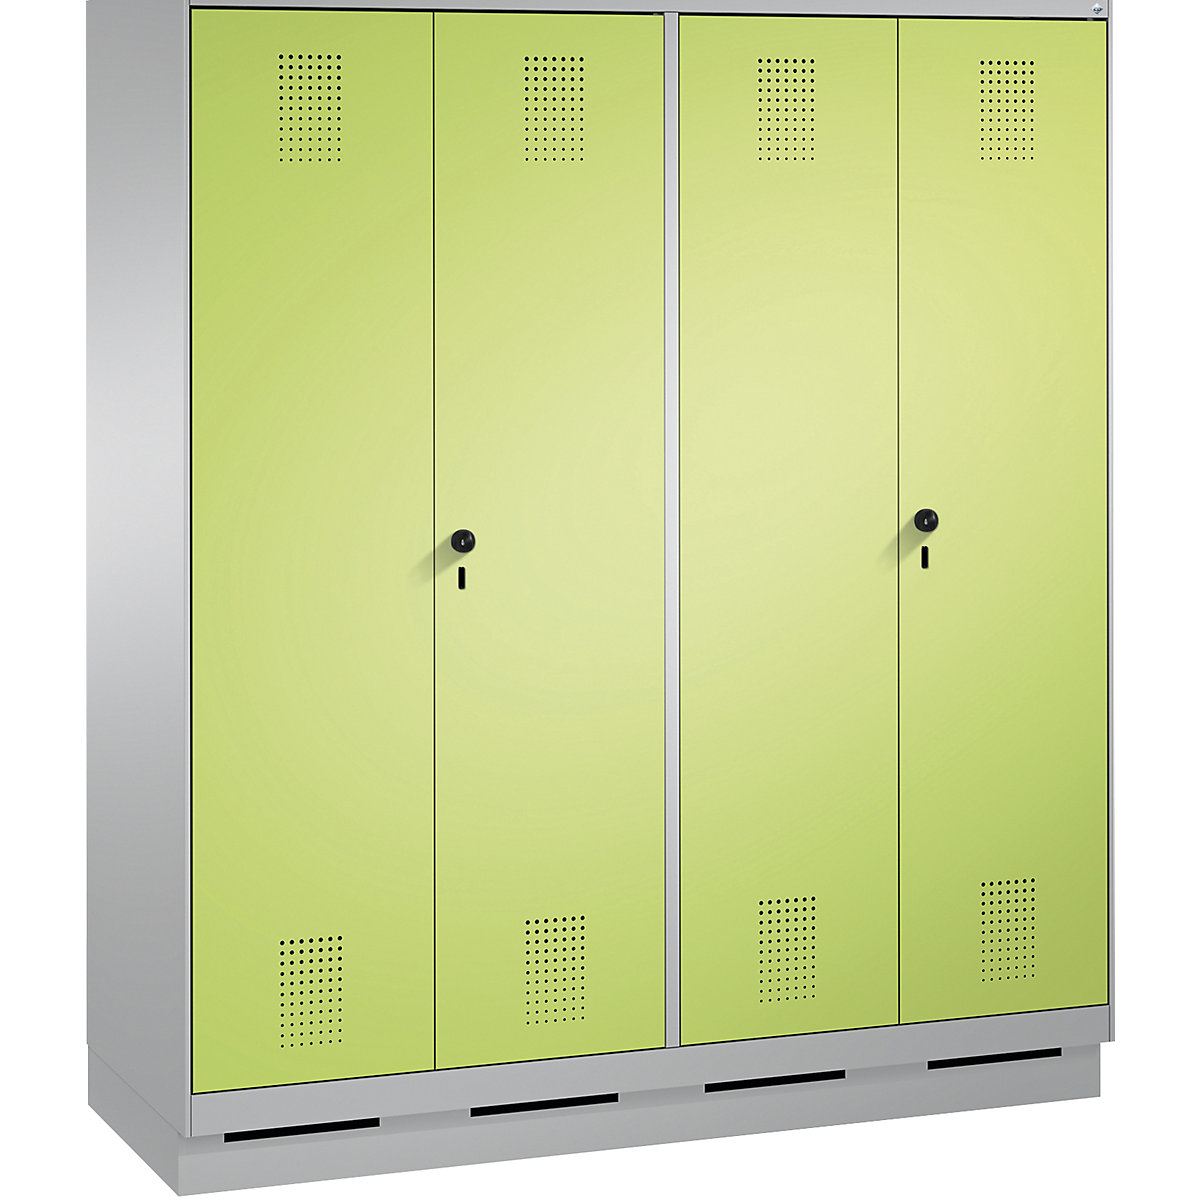 EVOLO öltözőszekrény, egymásra csukódó ajtók – C+P, 4 fülke, fülkeszélesség 400 mm, lábazattal, fehéralumínium / viridinzöld-3